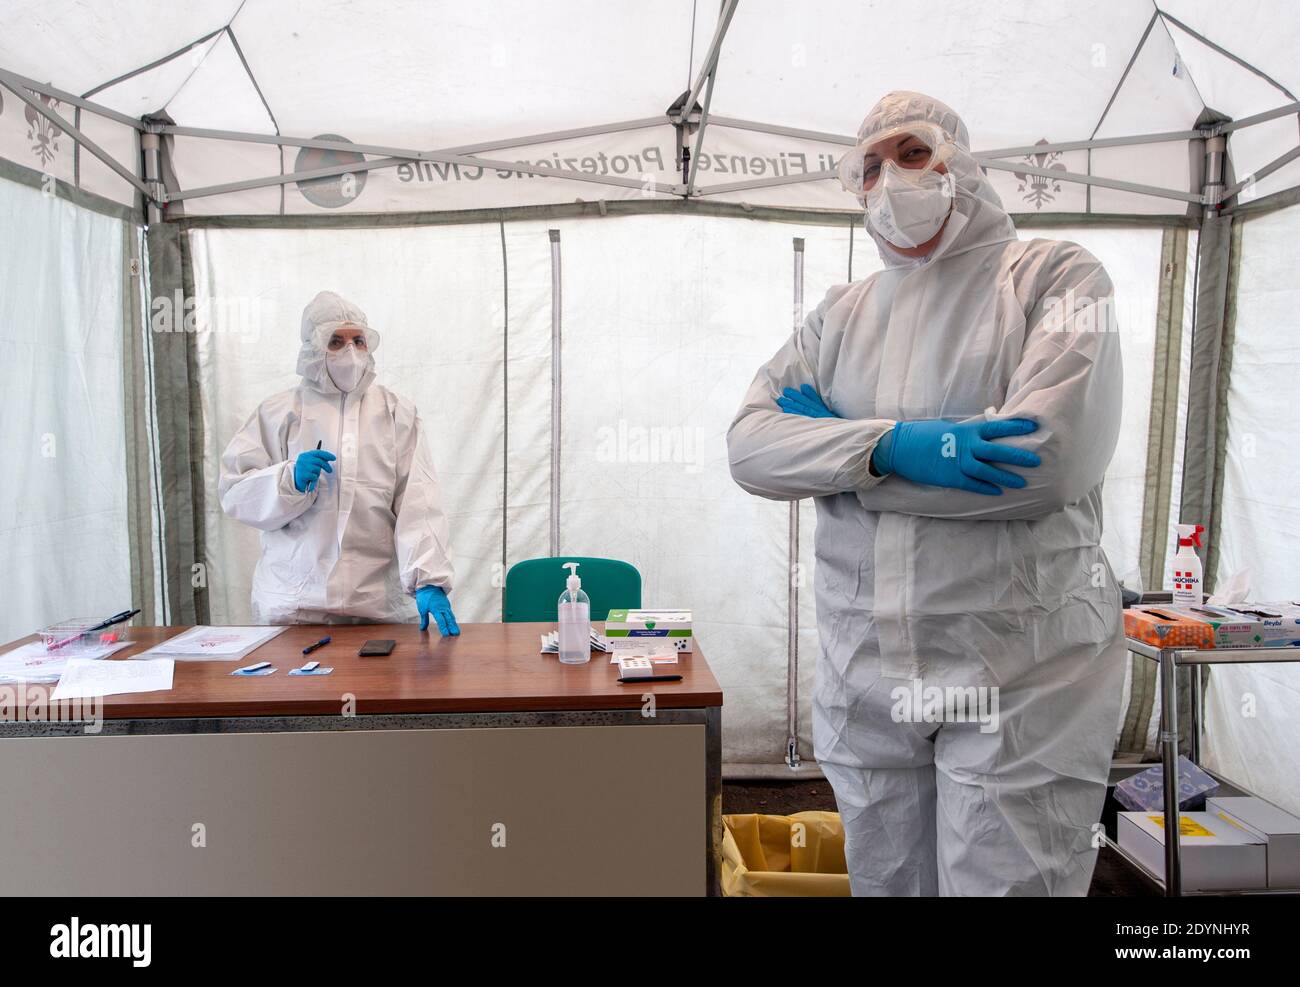 Florenz, Italien - 2020, Dezember 21: Nicht identifizierte medizinische Fachkräfte in einem Gesundheitsposten, während der Covid-19-Pandemie in einem Zelt aufgestellt. Sterile Suiten. Stockfoto